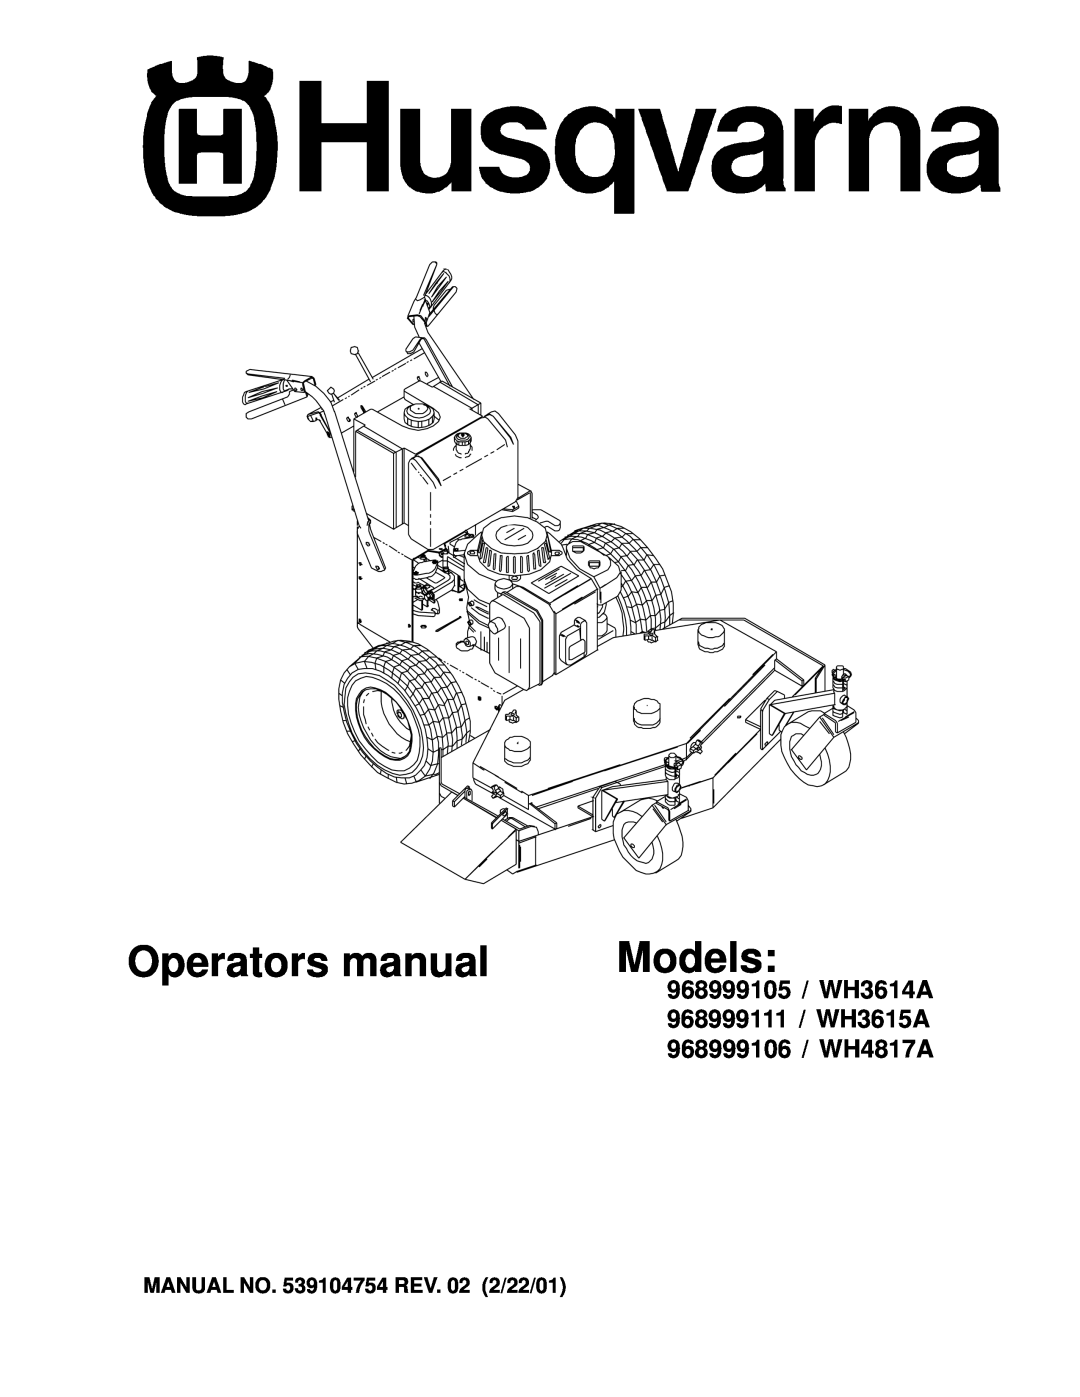 Husqvarna WH3615A, WH4817A manual MANUAL NO. 539104754 REV. 02 2/22/01, Operators manual, Models, 968999105 / WH3614A 